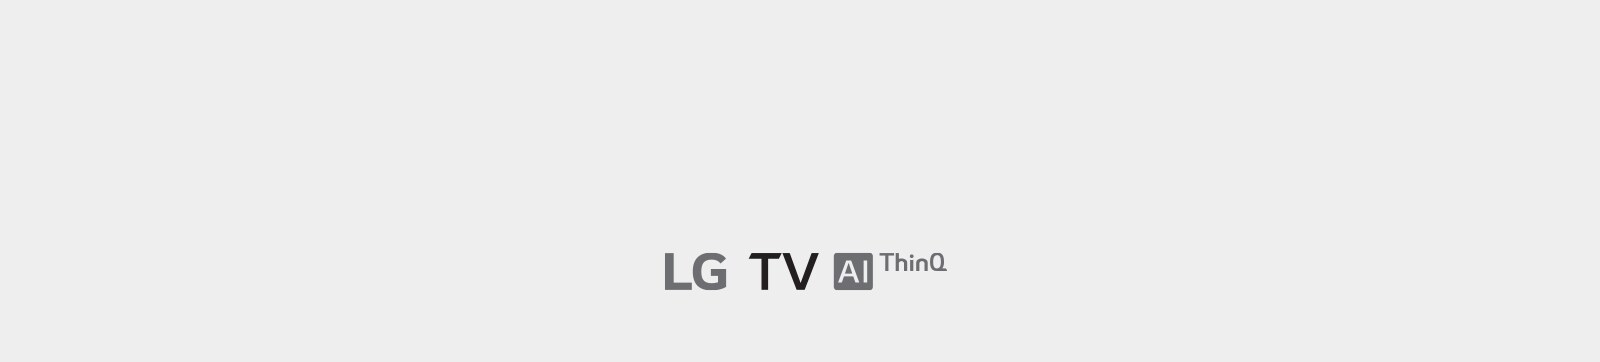 TV-Al(ThinQ)-05-Desktop